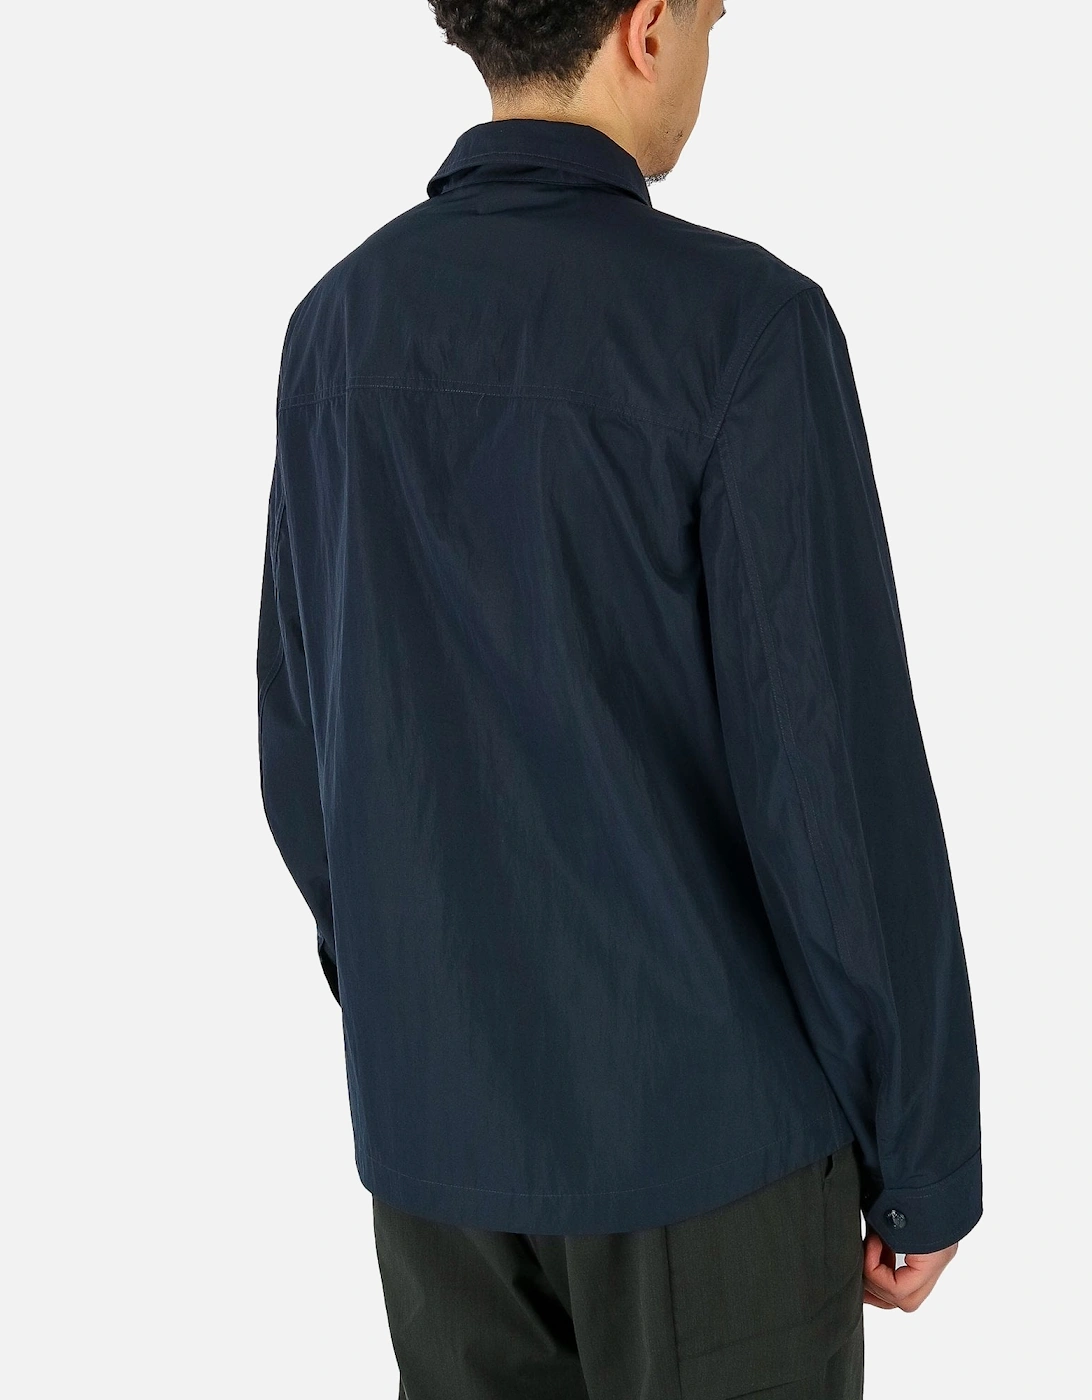 Outline Lightweight Mesh Pocket Navy Overshirt Jacket